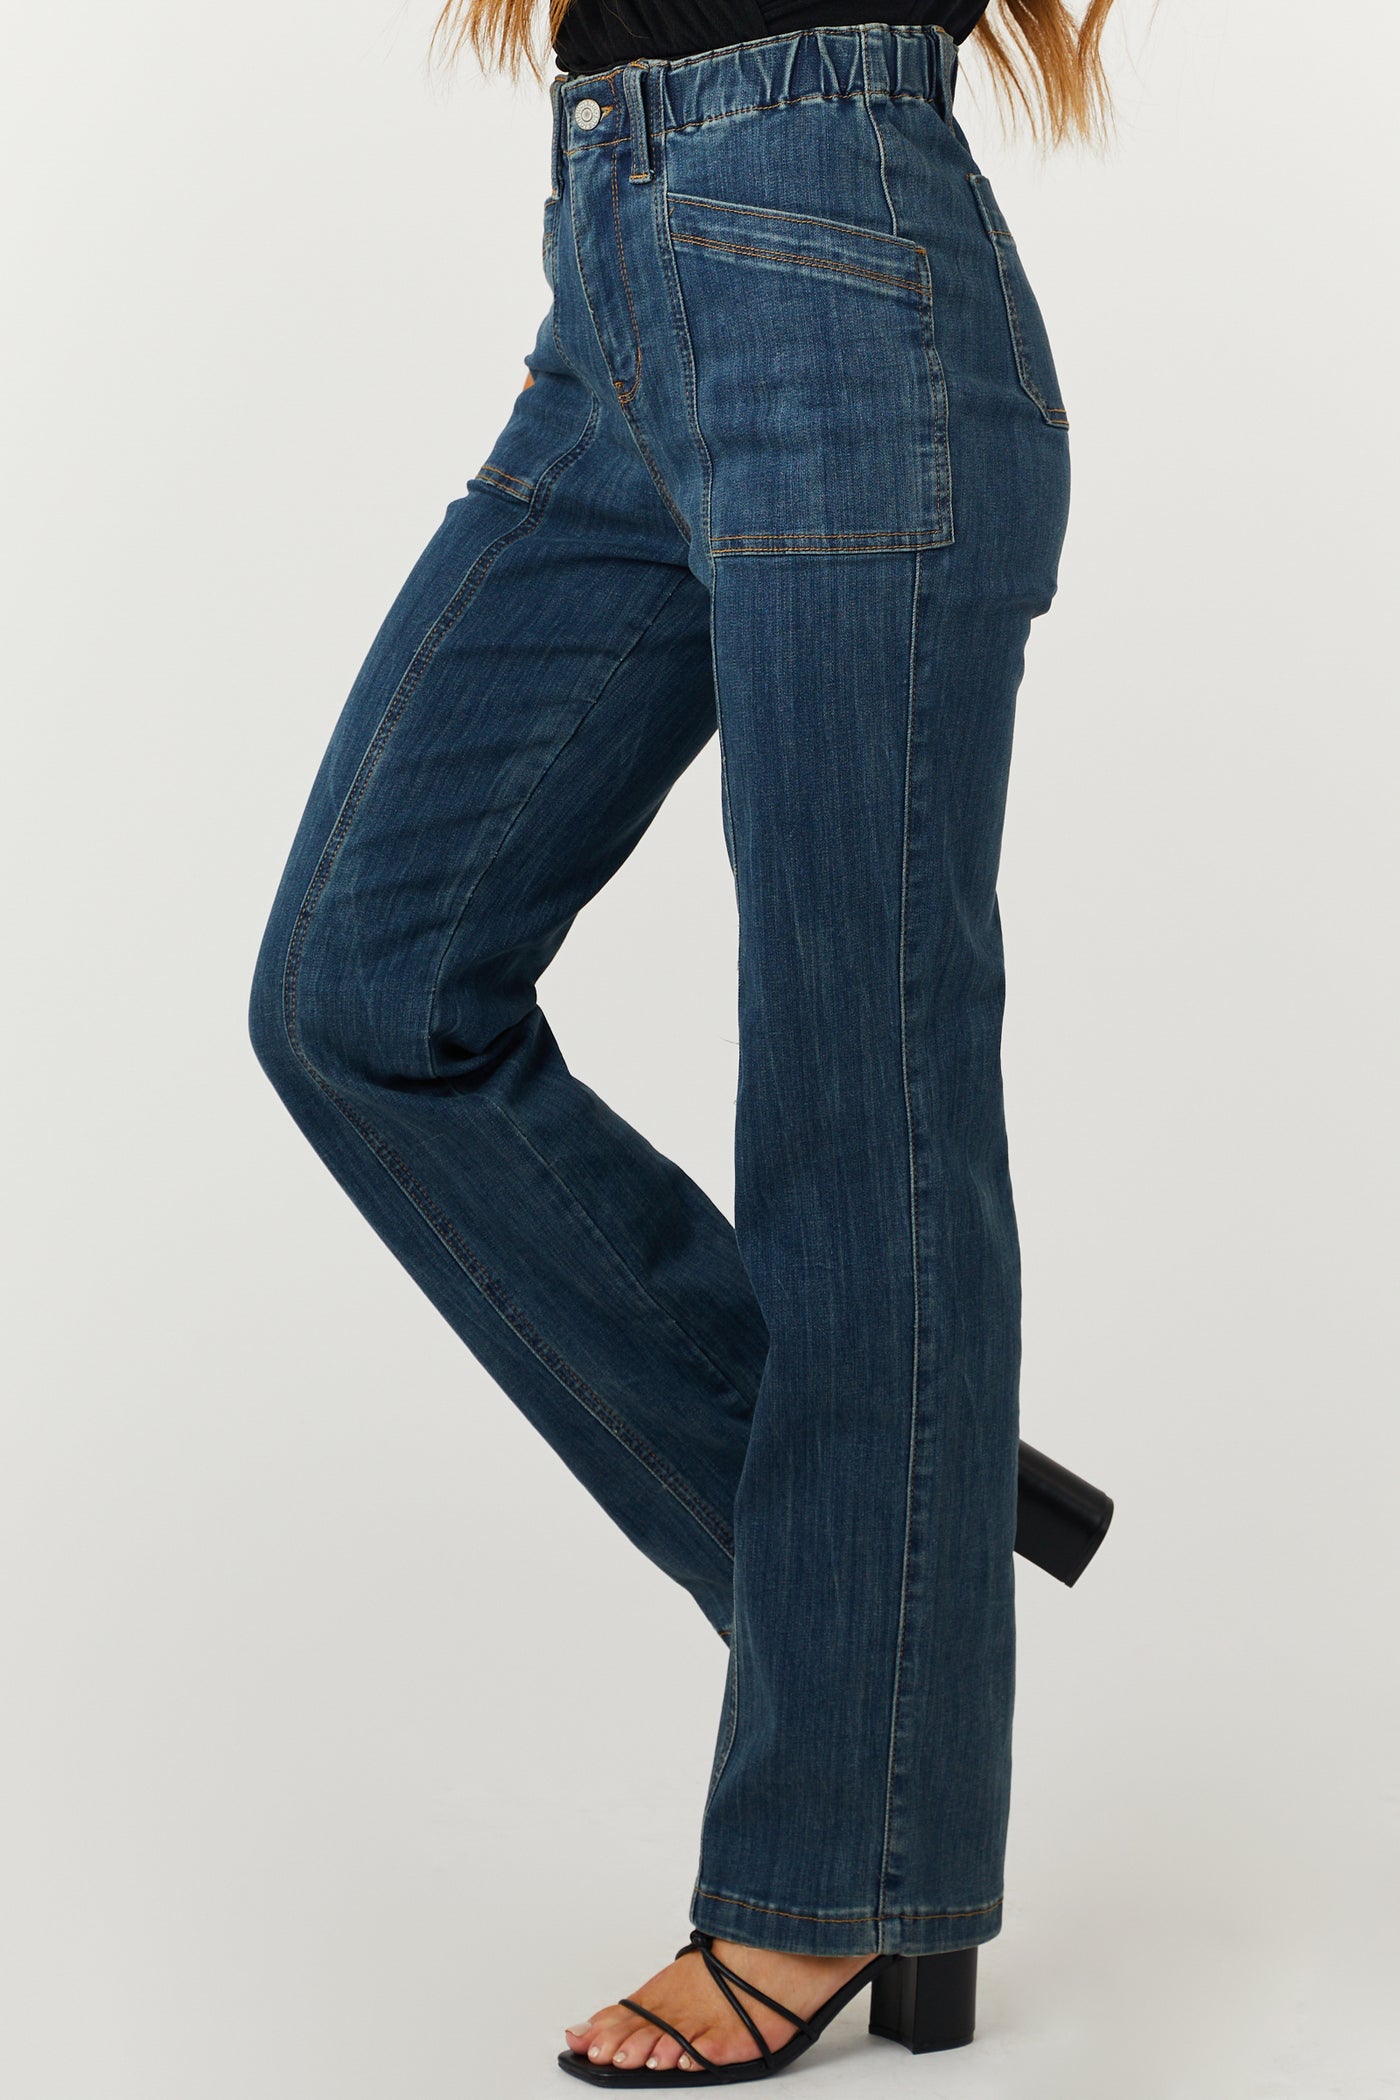 Medium Wash Elastic Waist Vintage Straight Jeans